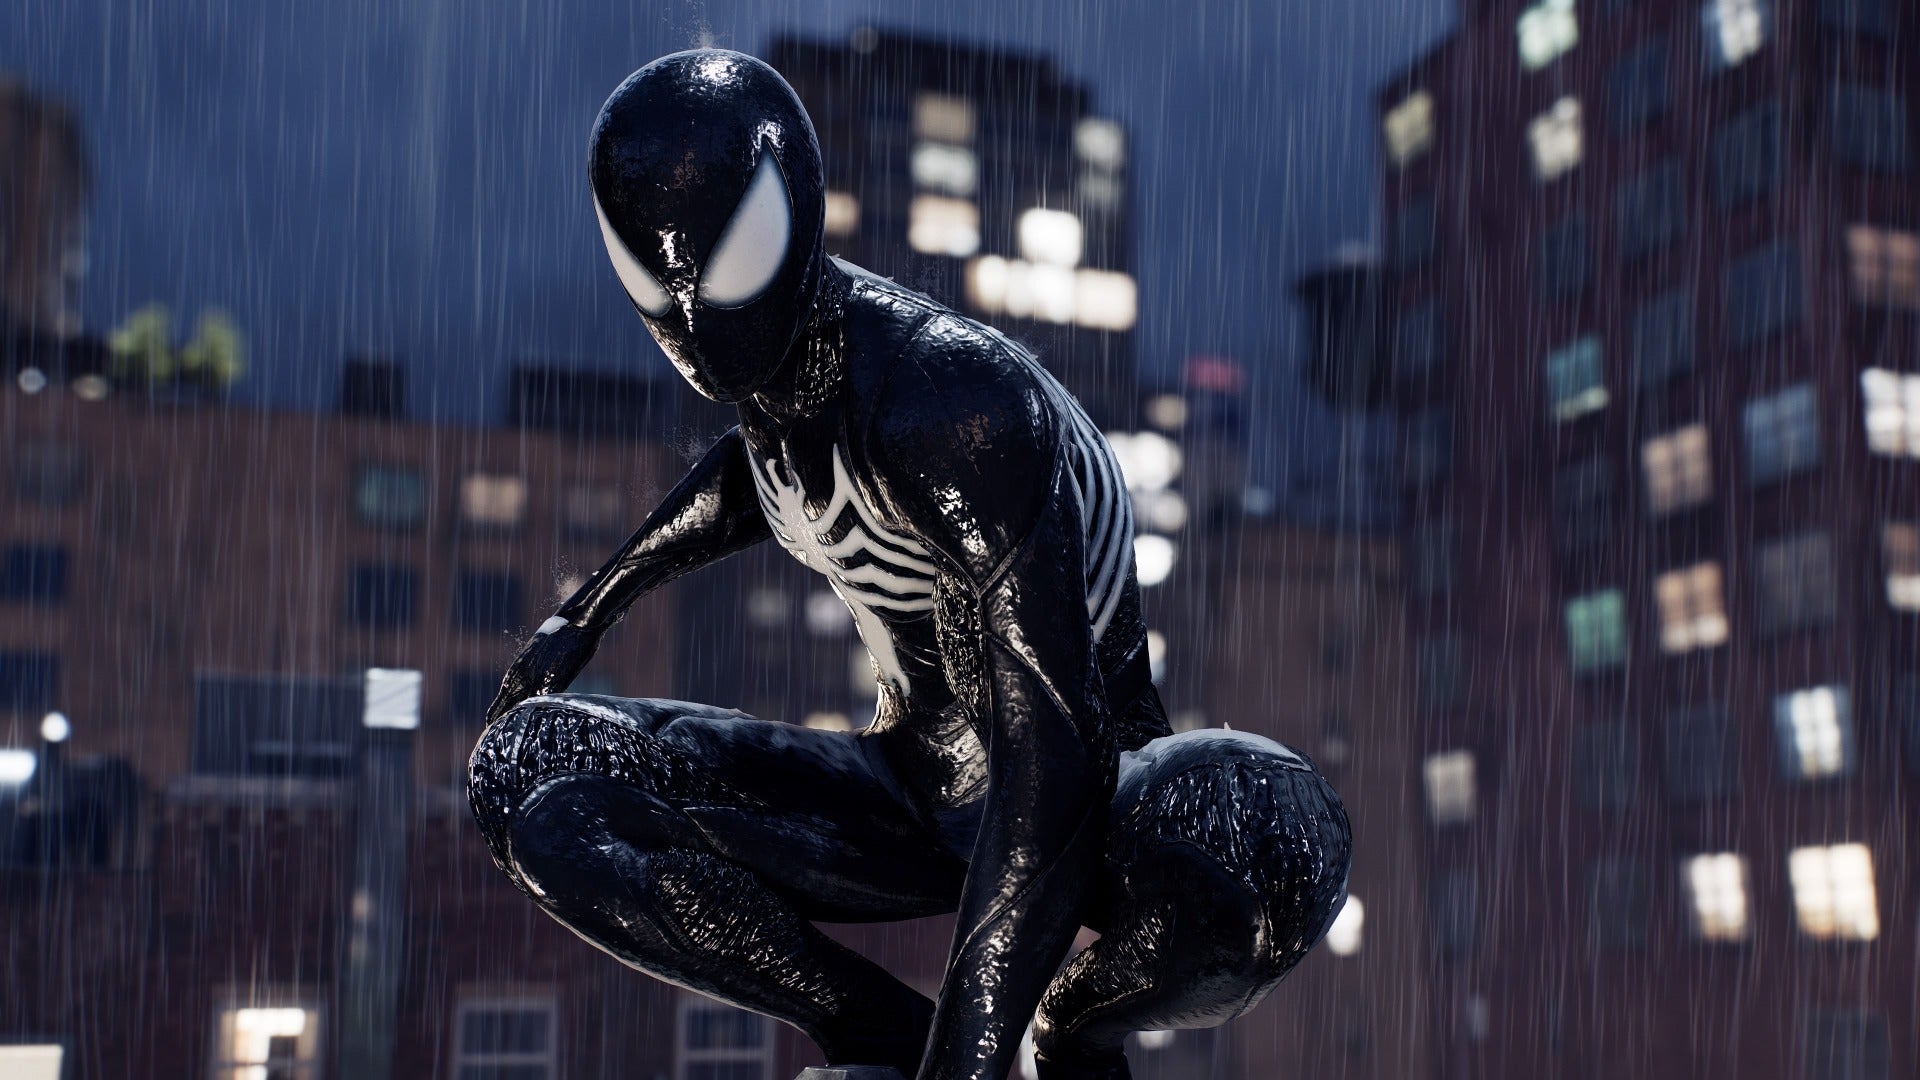 Marvel Spider-Man 3 Spider-Man 3 Spider-Man Action Figure Black Suit Hasbro  - ToyWiz